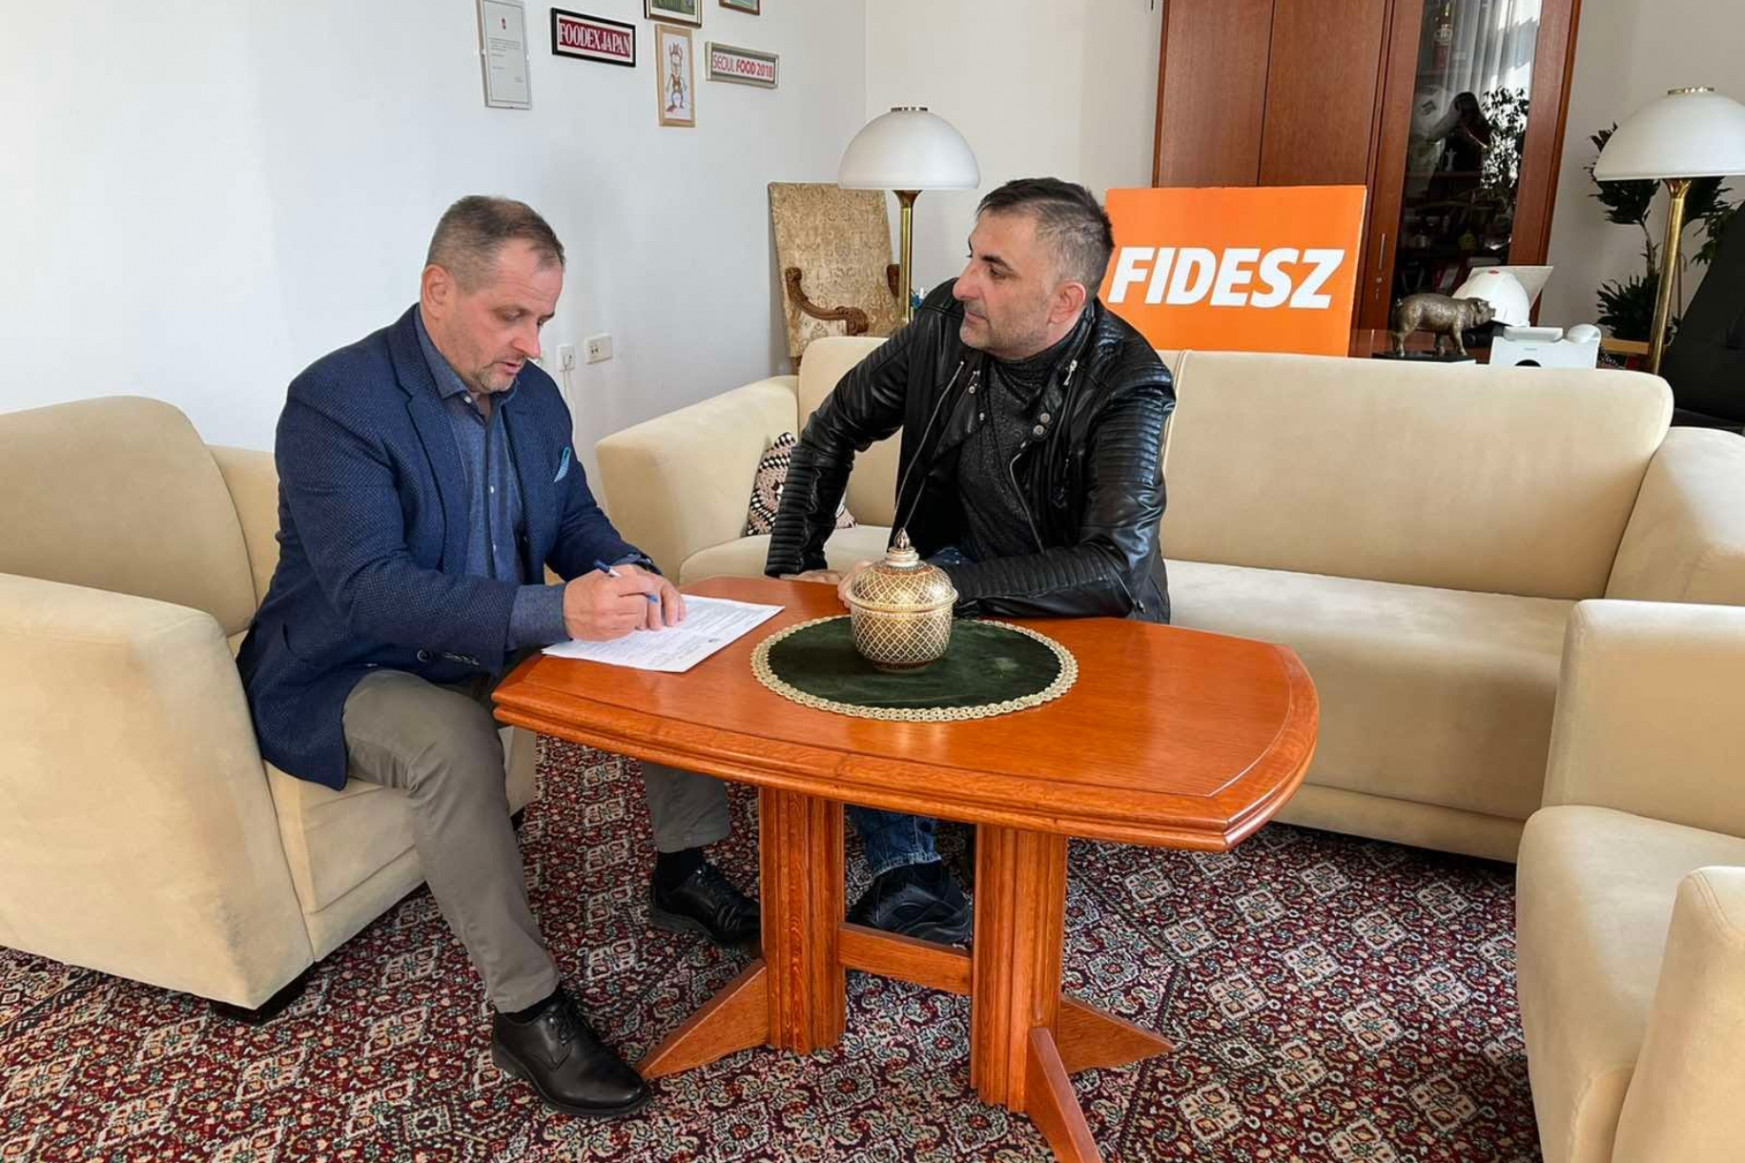 Összenő, ami összetartozik: Gáspár Győző belép a Fideszbe